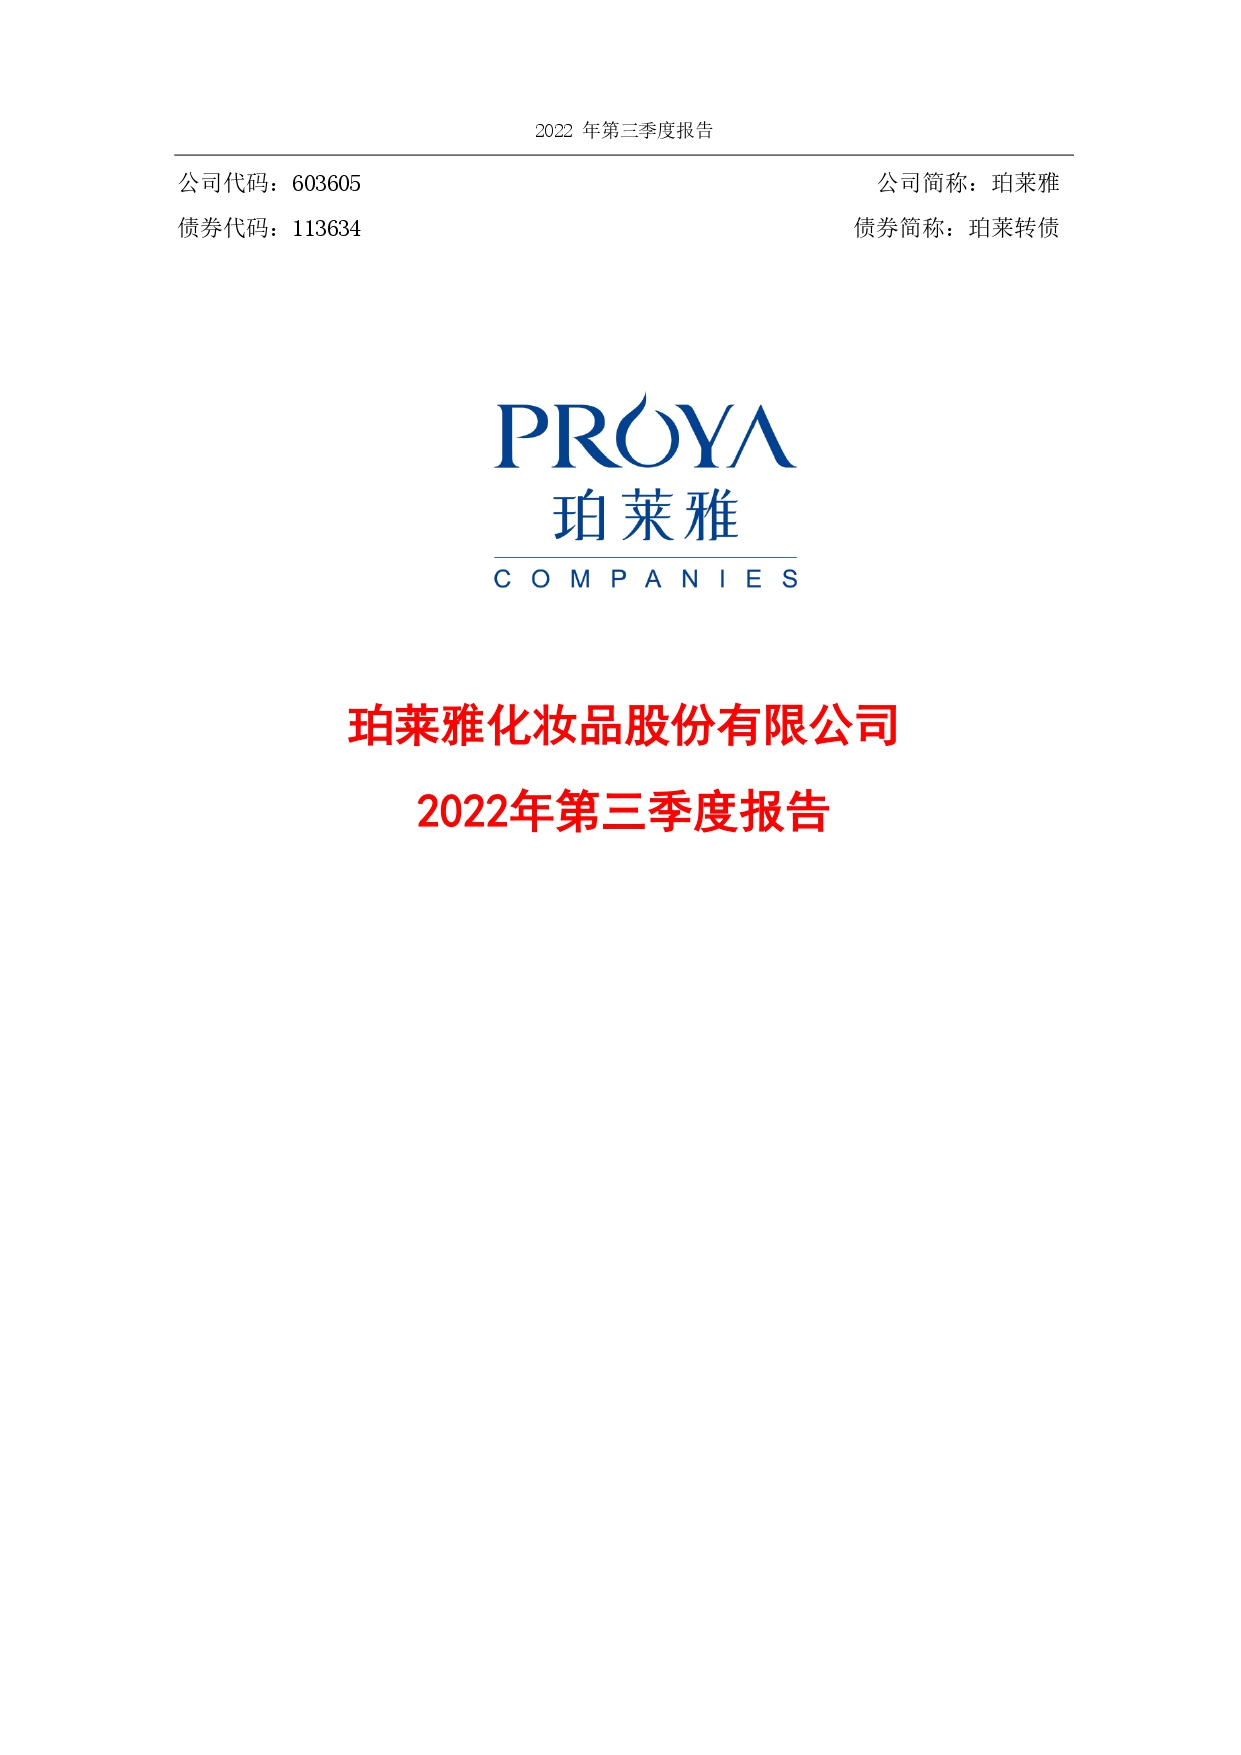 2022年第三季度财务报告封面_page-0001.jpg